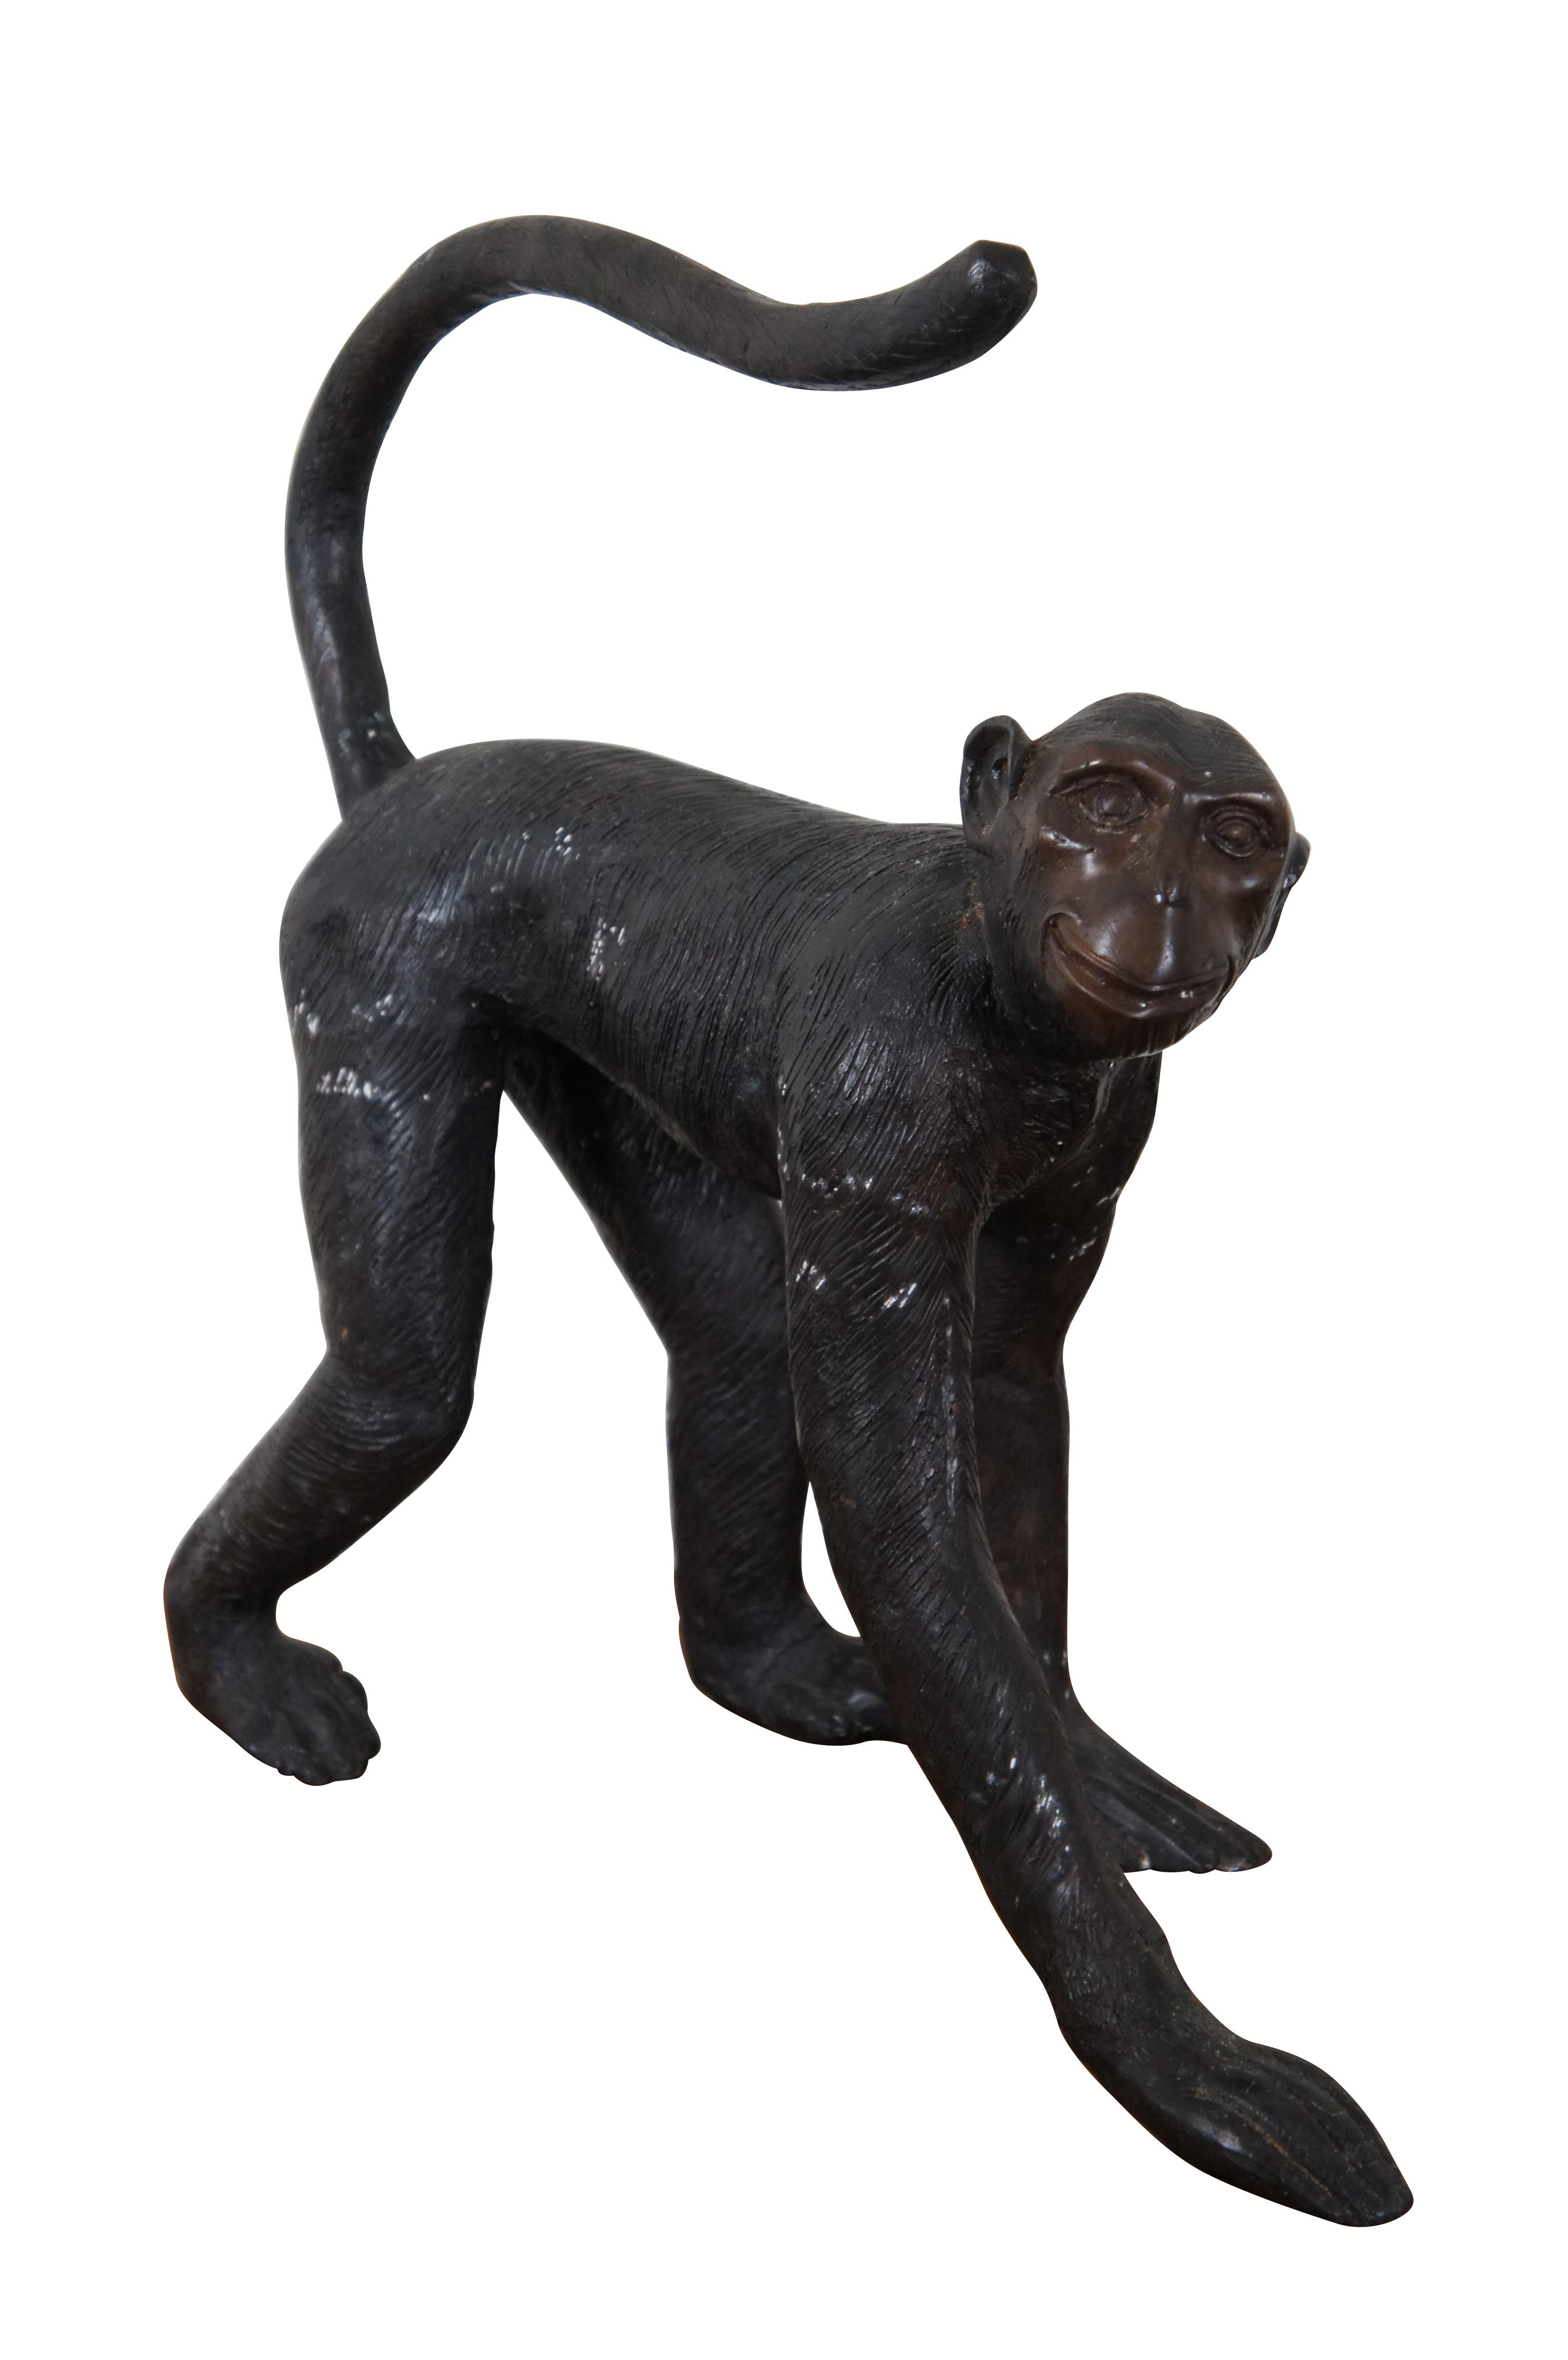 Große Vintage Maitland Smith Bronze-Skulptur oder Statue eines glücklichen Affen zu Fuß auf allen Vieren mit seinem Schwanz über den Rücken erhoben.  Wird als Toilettenpapierhalter verwendet.

Abmessungen:
20,5